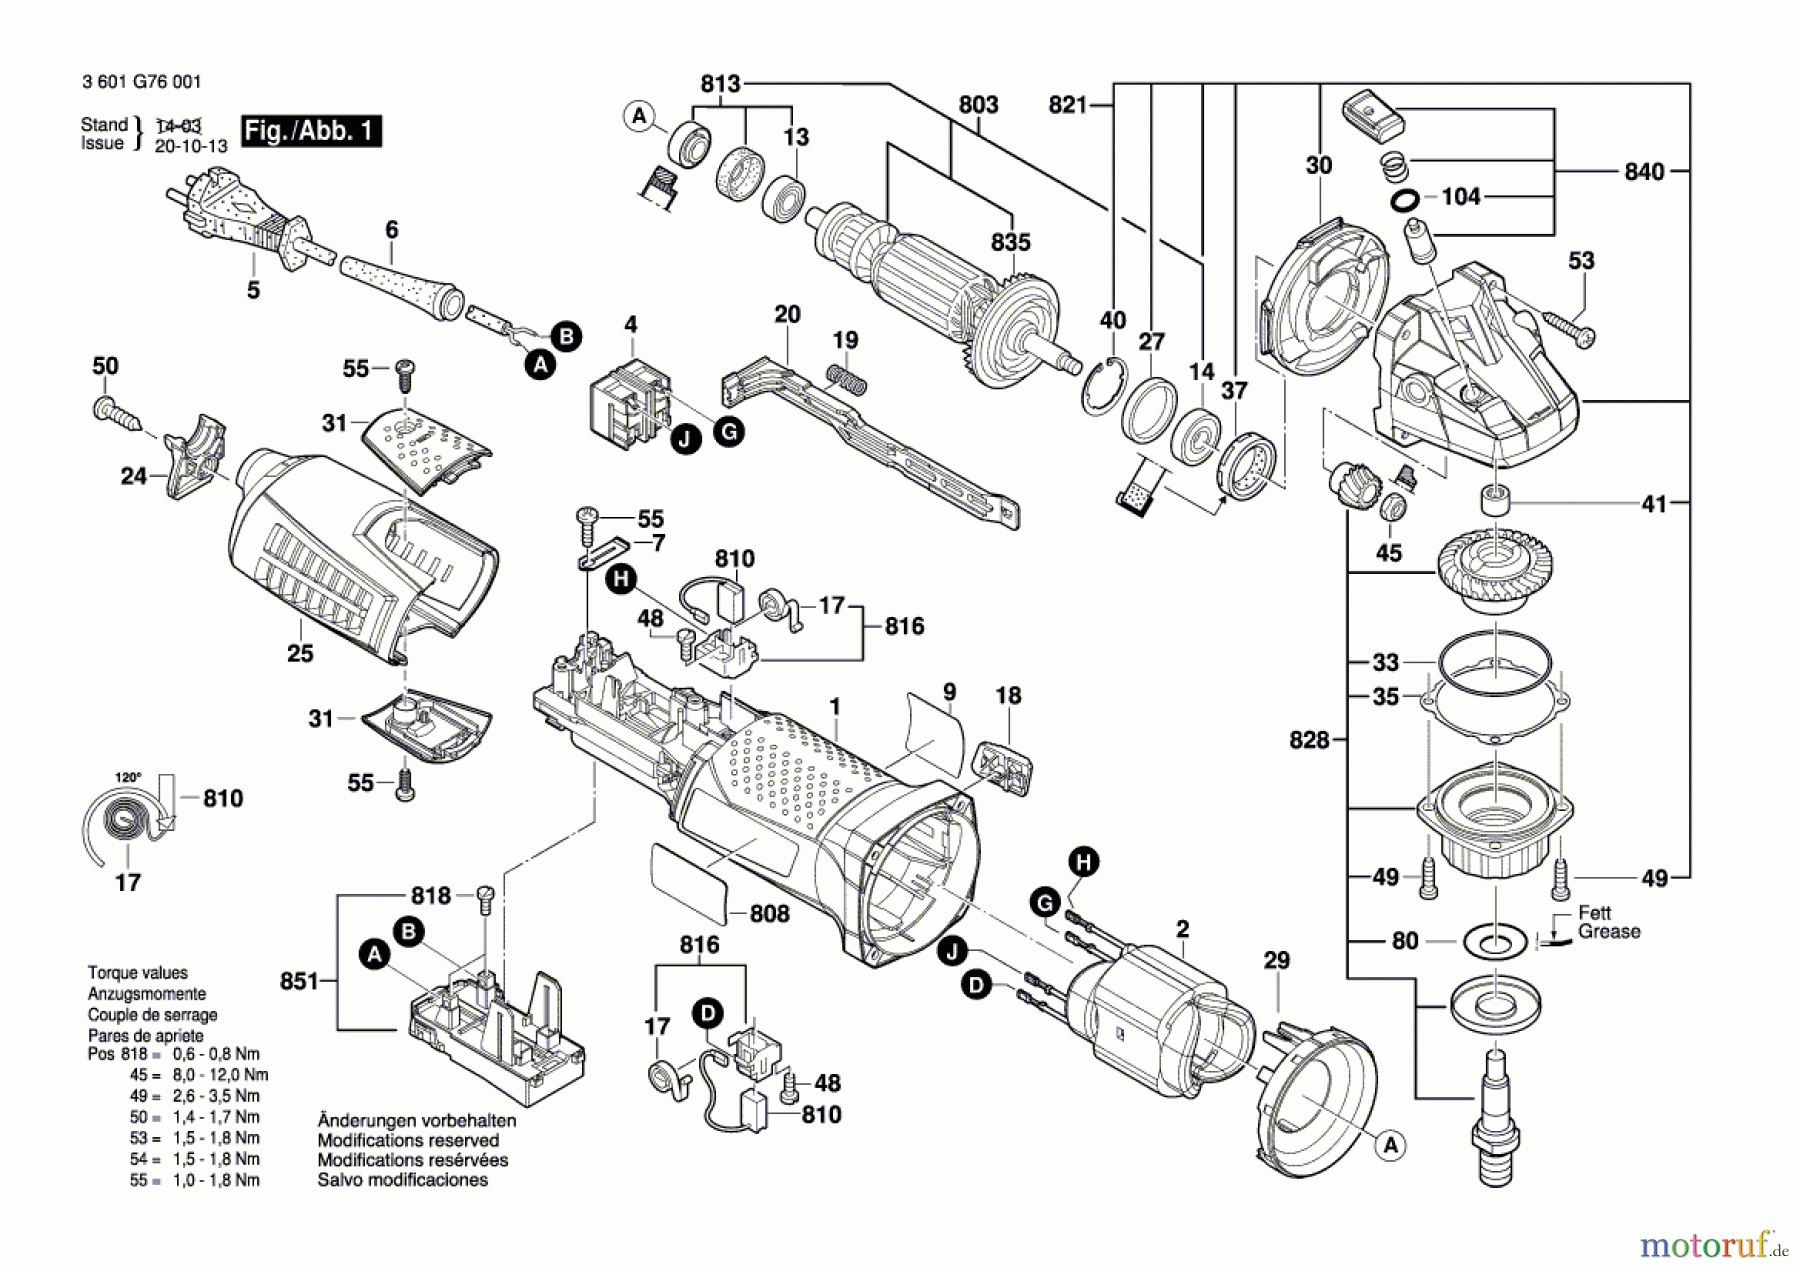  Bosch Werkzeug Betonschleifer GBR 15 CAG Seite 1